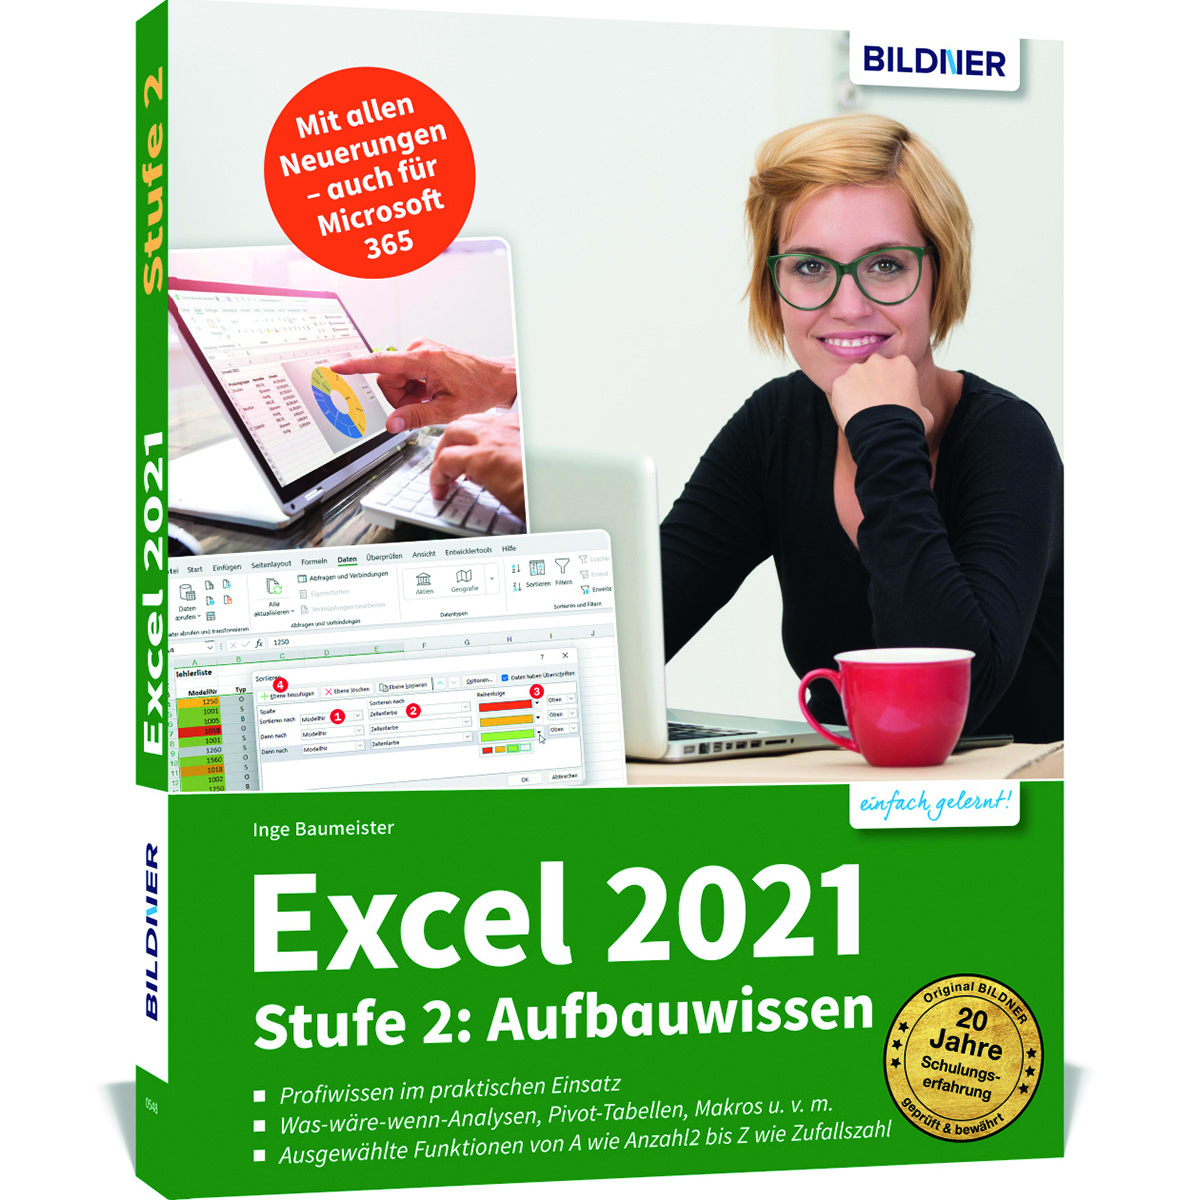 Excel 2021 - Aufbauwissen Stufe 2